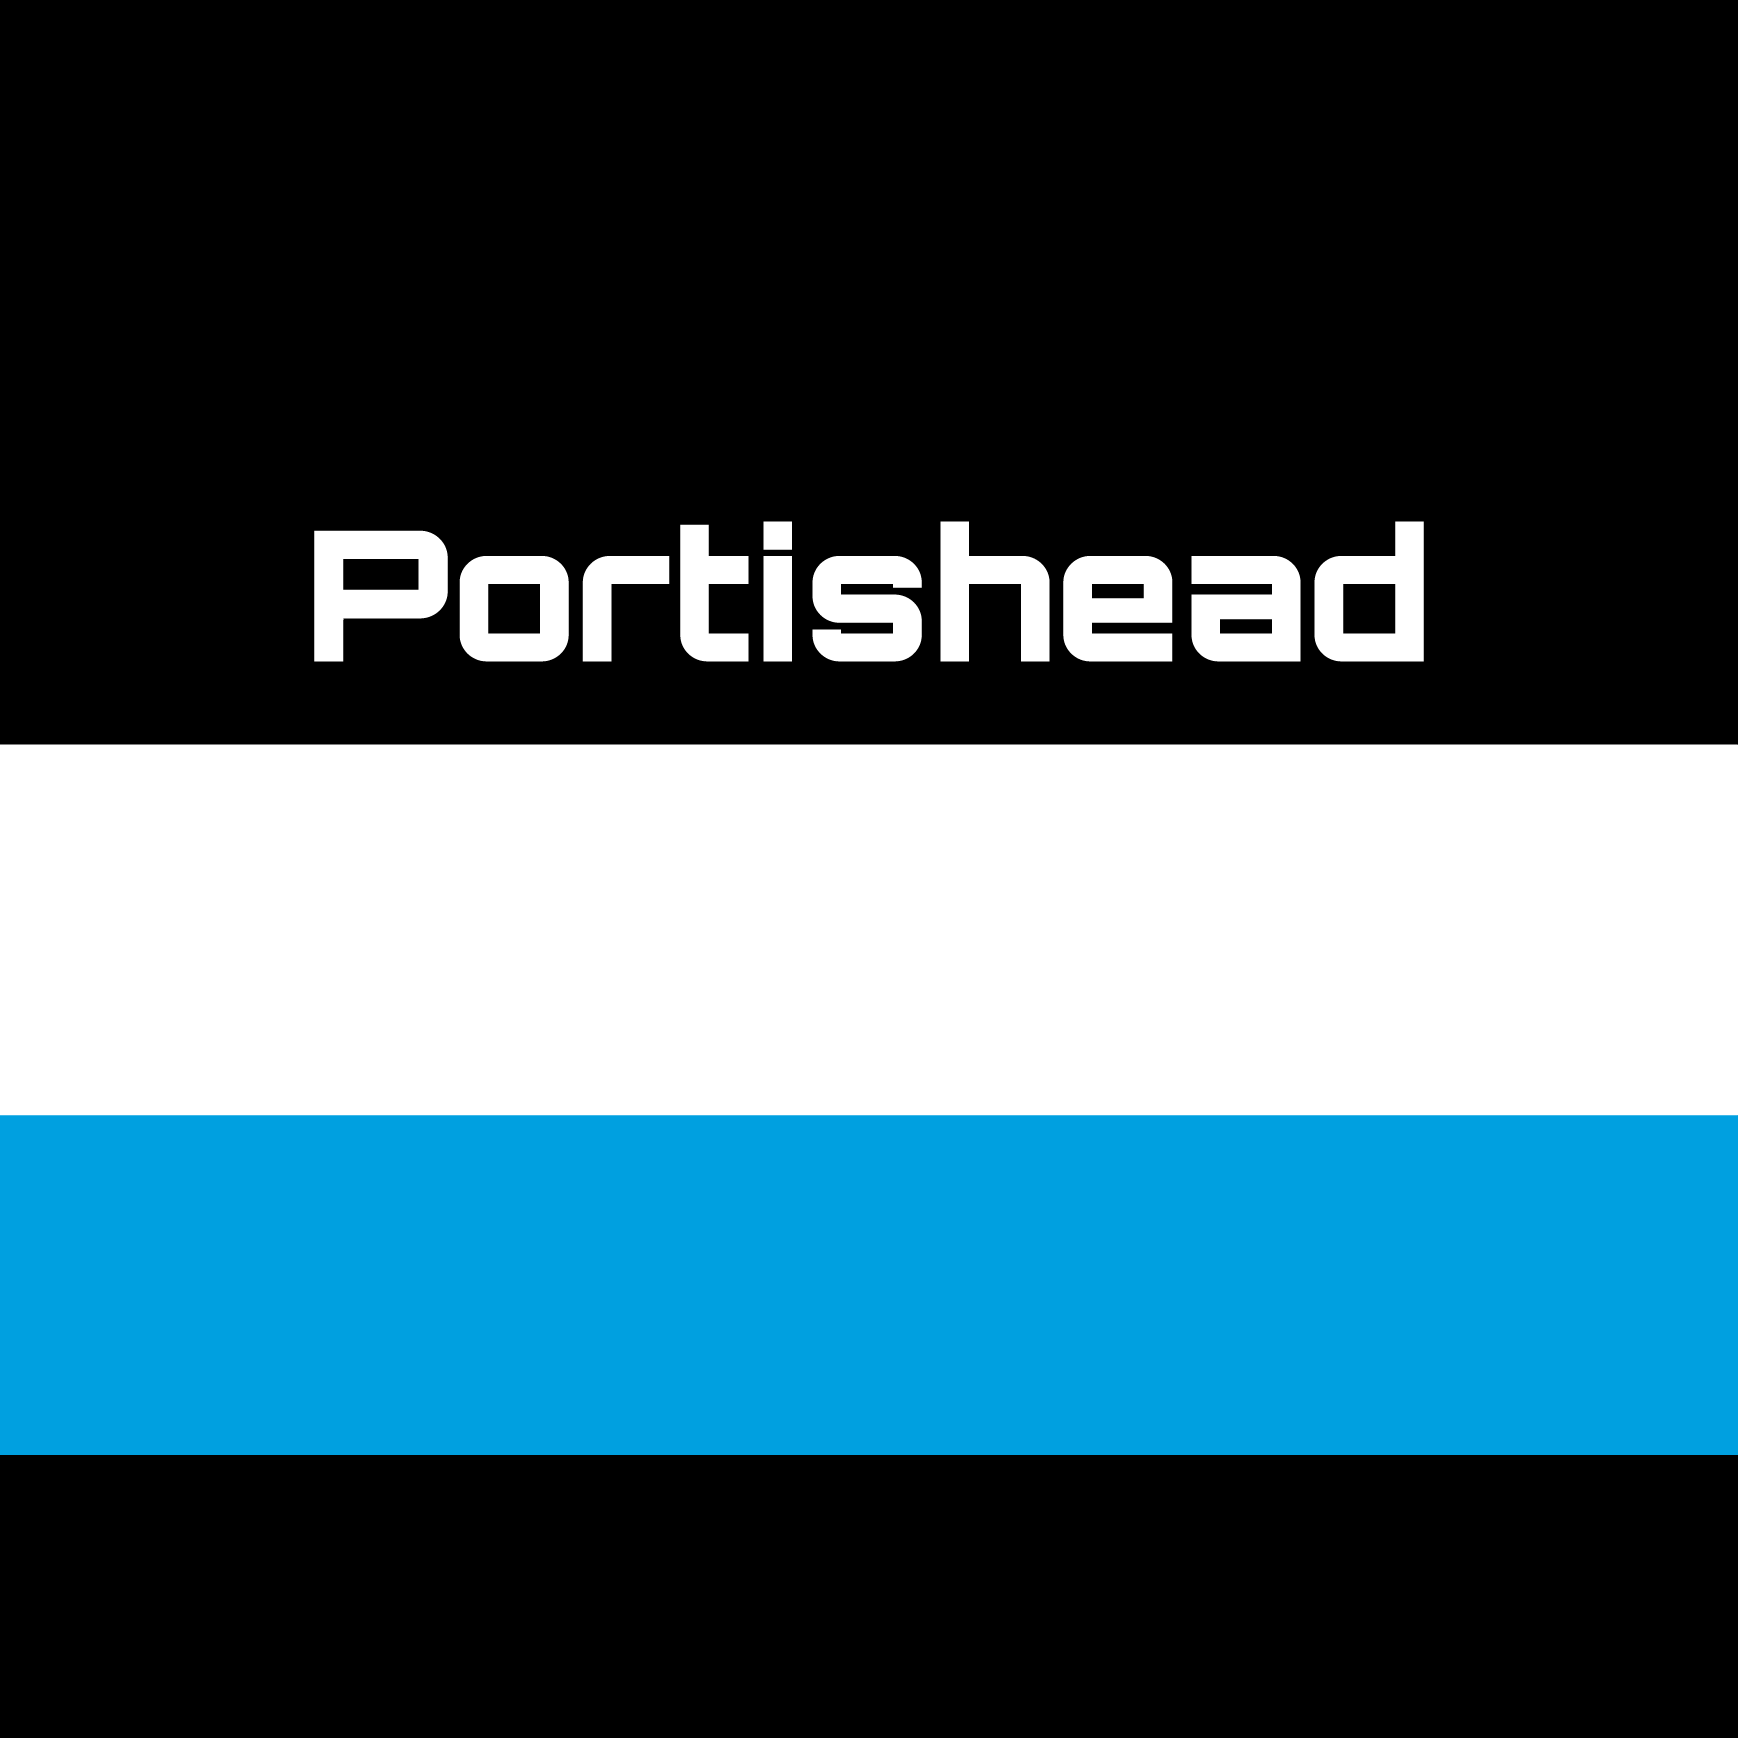 Club Image for PORTISHEAD CC